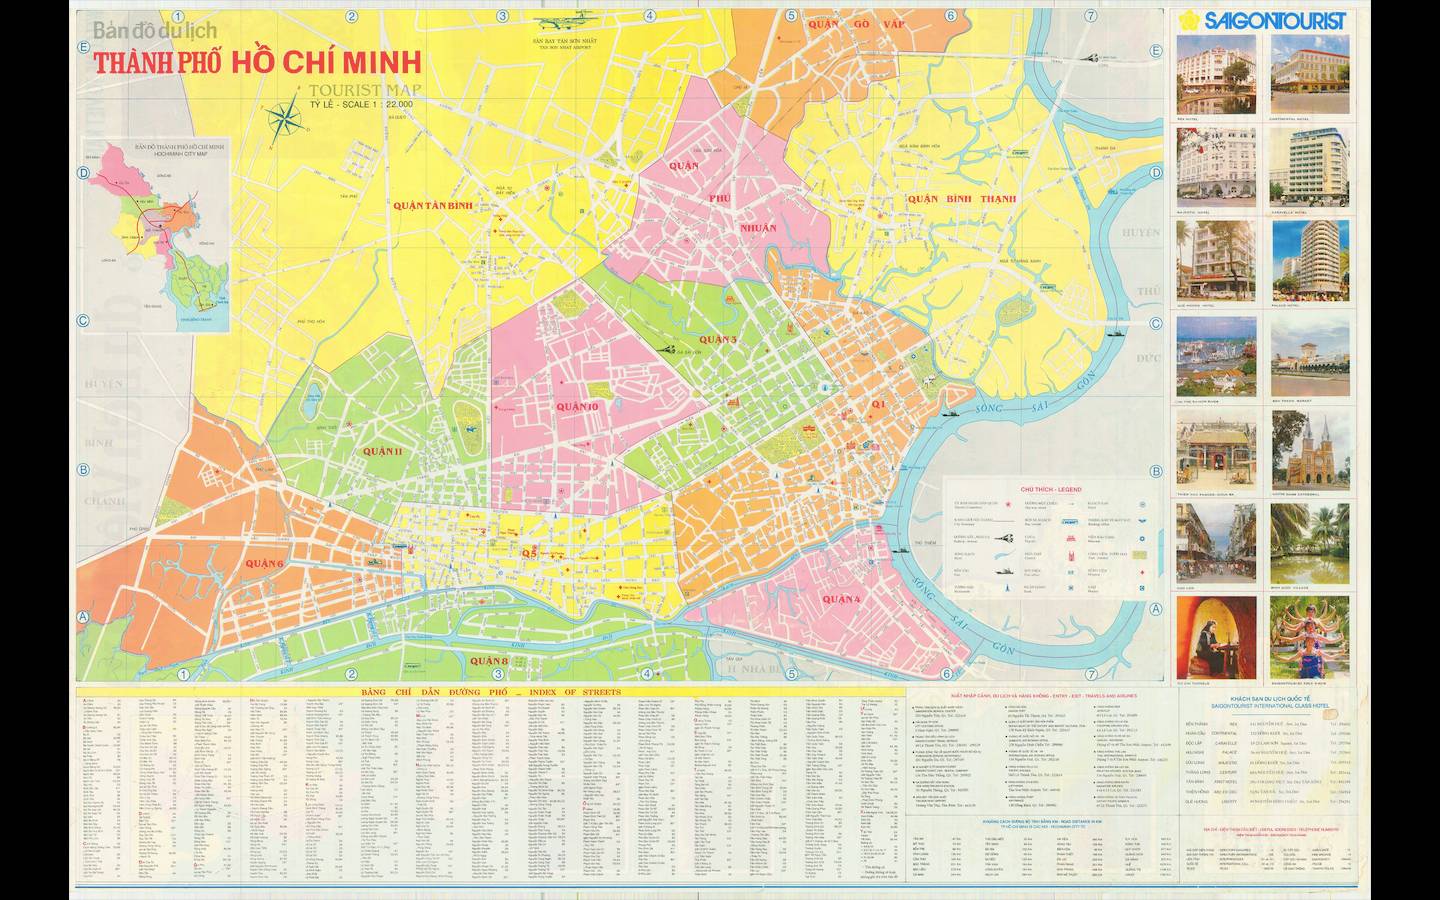 Với sự phát triển mạnh mẽ, bản đồ TP HCM khổ lớn 2024 sẽ giúp cho bạn có được cái nhìn hoàn chỉnh và chính xác nhất về thành phố đang phát triển. Bản đồ cập nhật nhanh chóng và đầy đủ về các khu vực mới thành lập, các con đường mới và cách đi lại giữa các khu vực. Hãy tải ngay bản đồ TP Hồ Chí Minh khổ lớn và khám phá điều kỳ diệu của thành phố này.